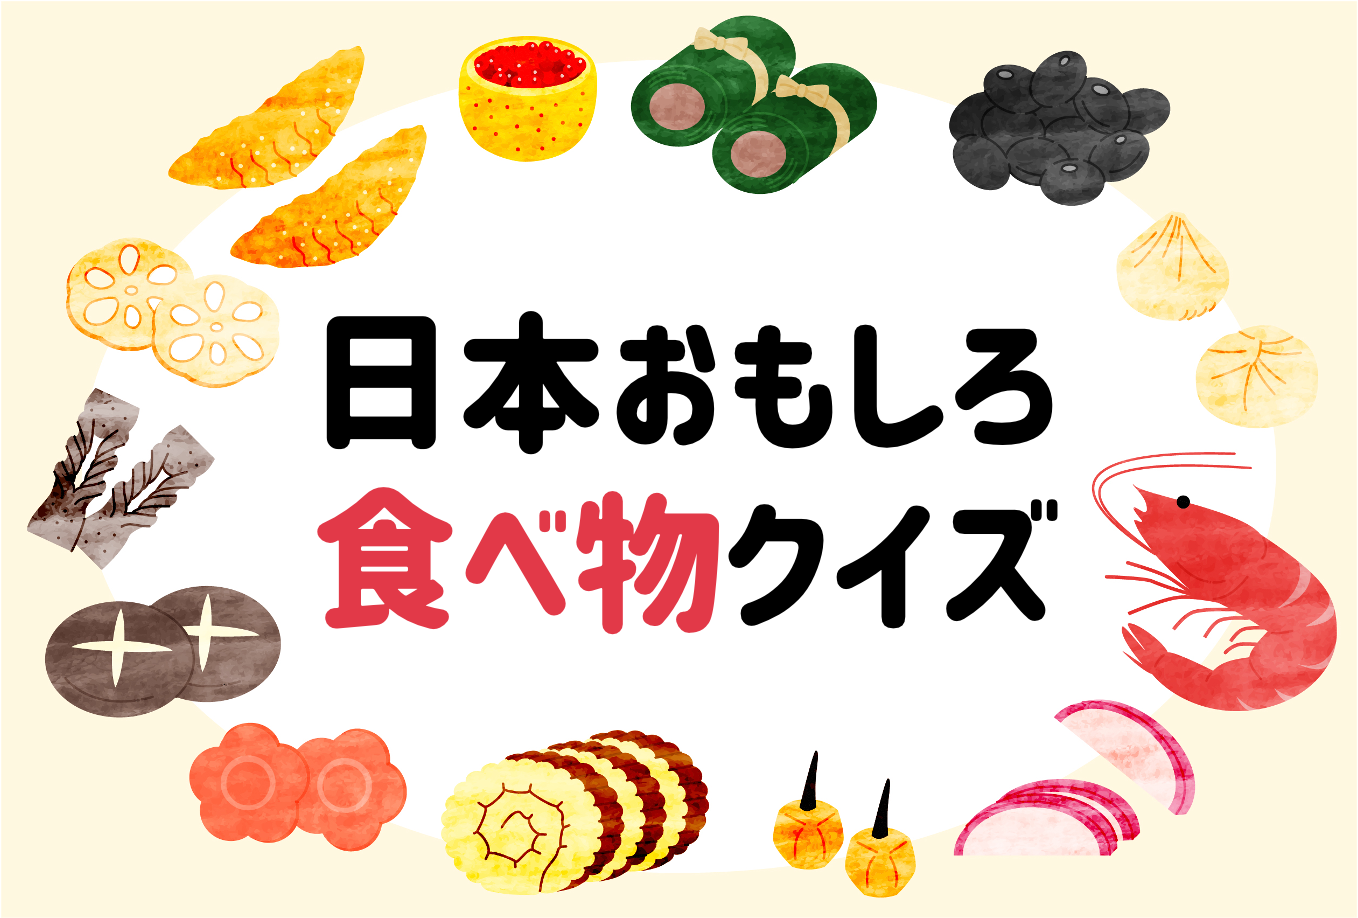 日本おもしろ食べ物クイズ 子供向け 全問 楽しく学べるマルバツ問題 クイズ王国